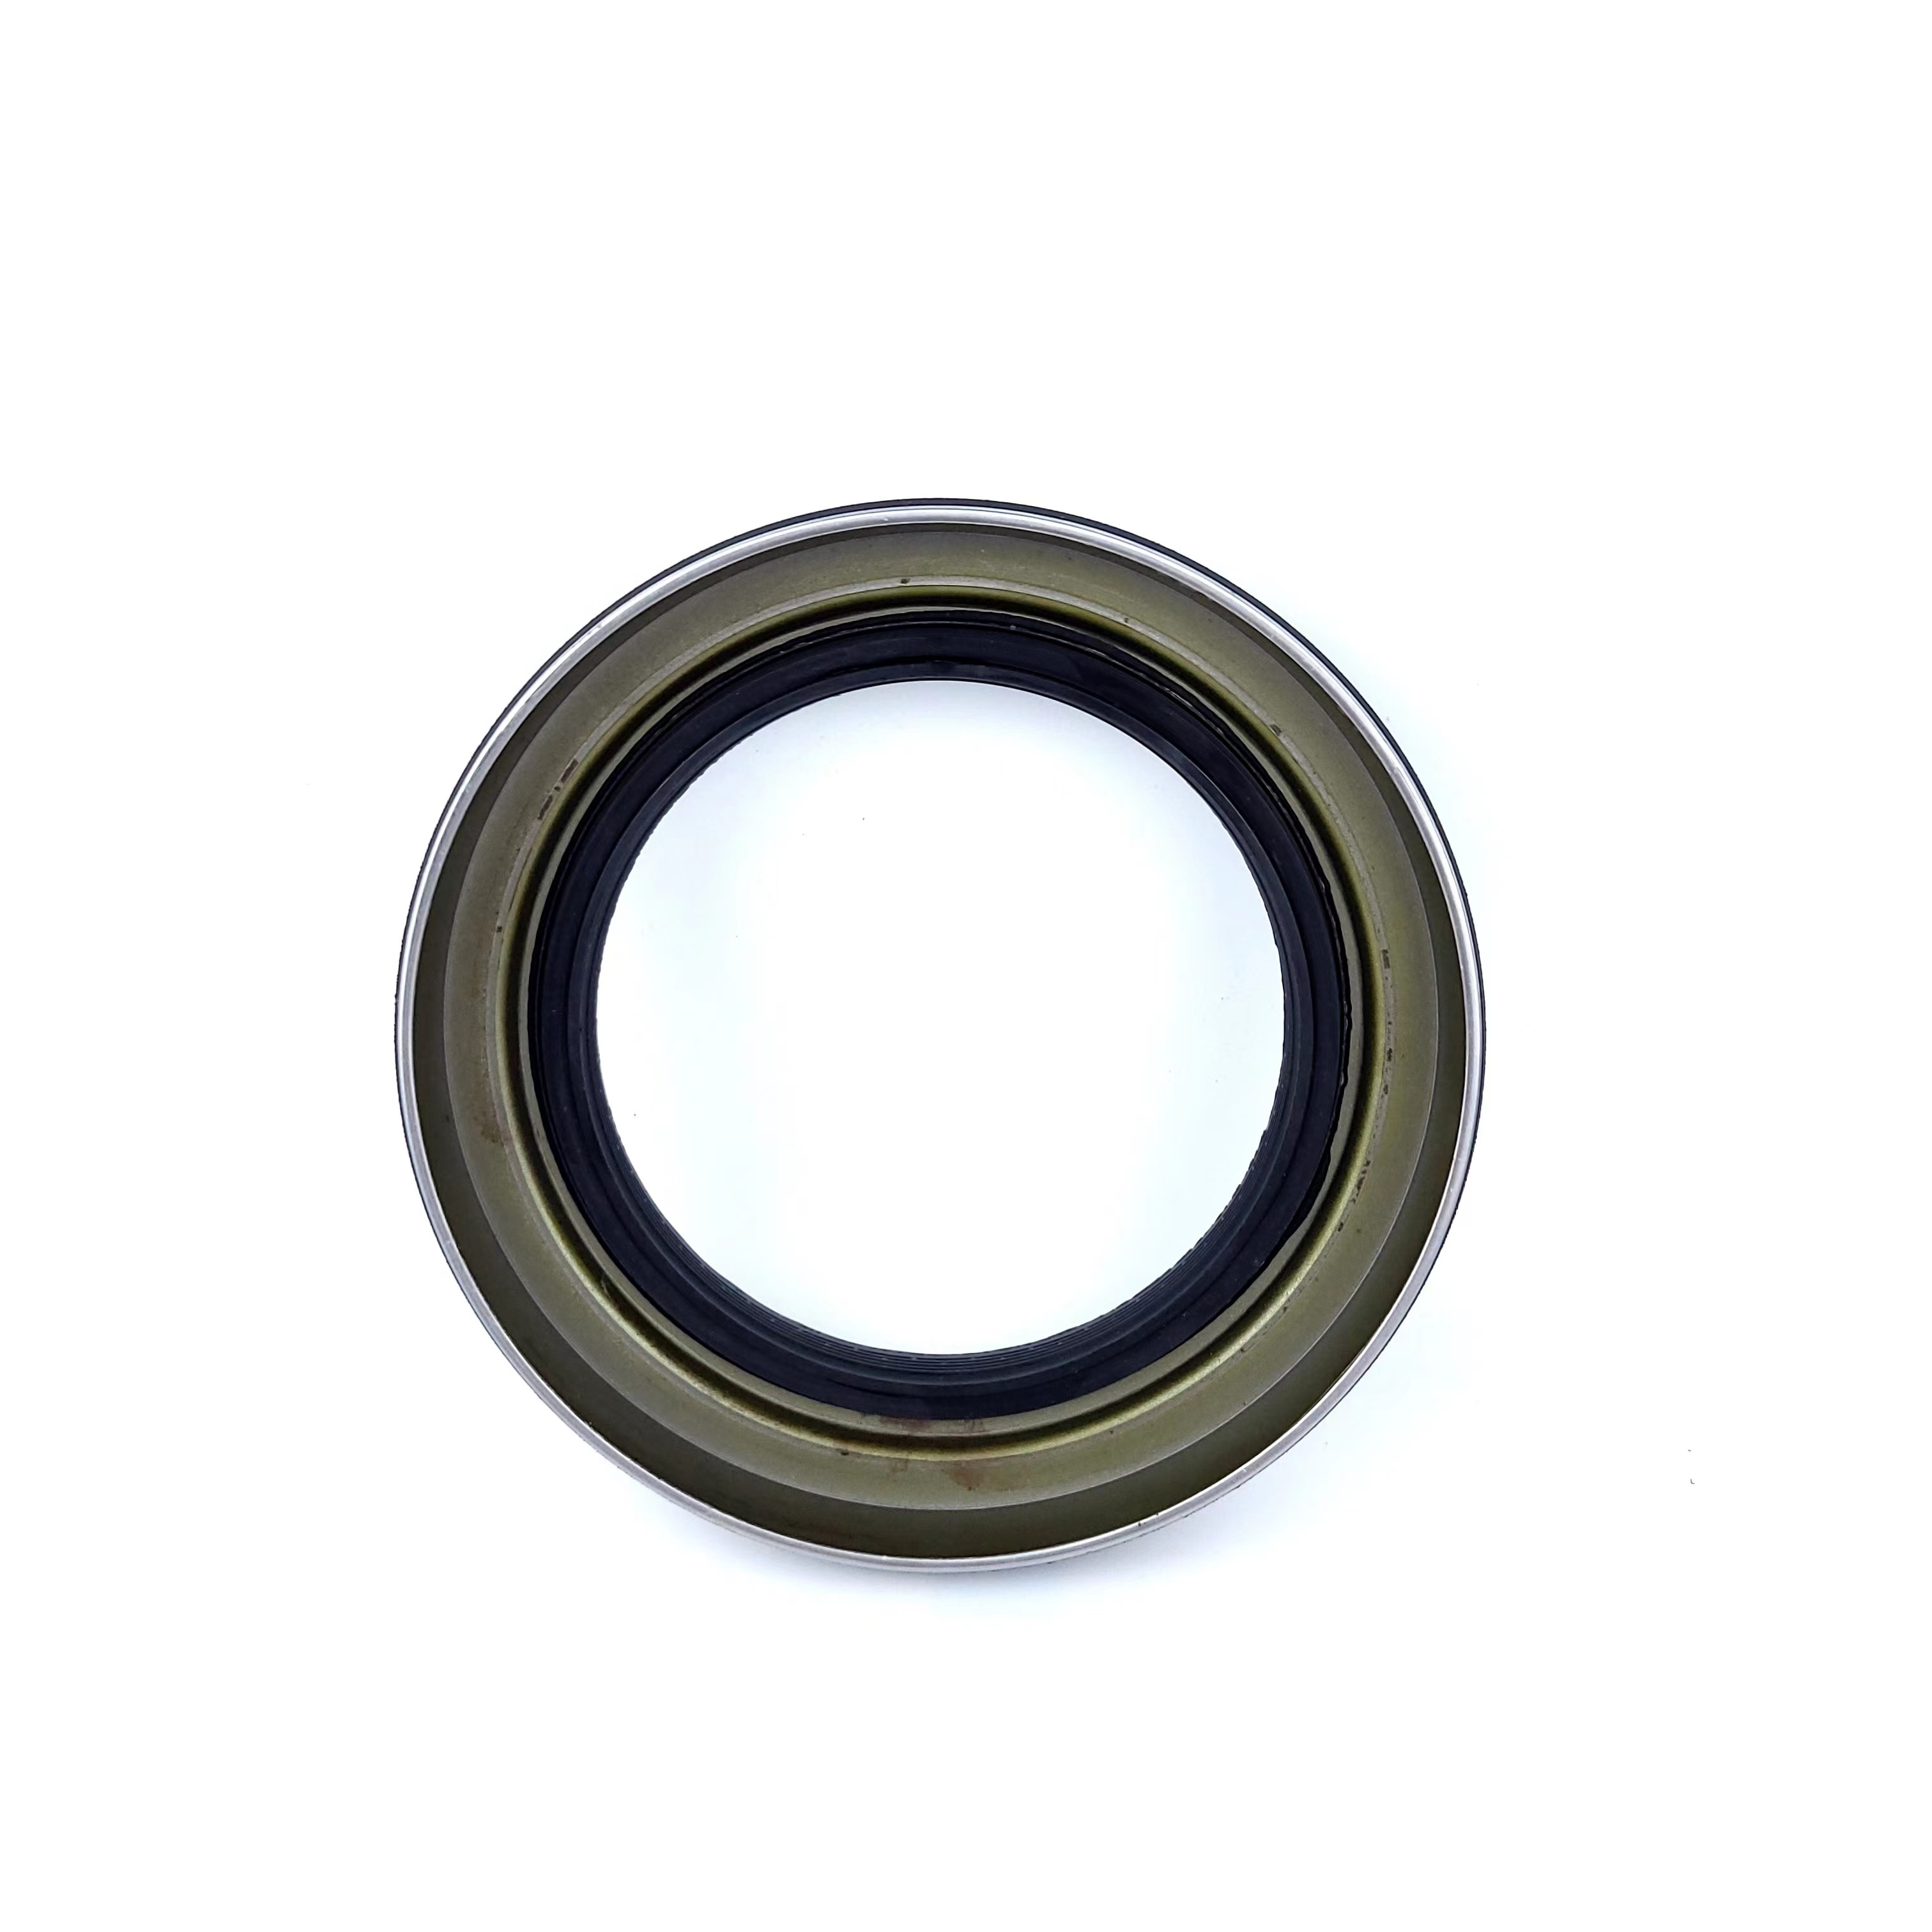 Wheel hub oil seal